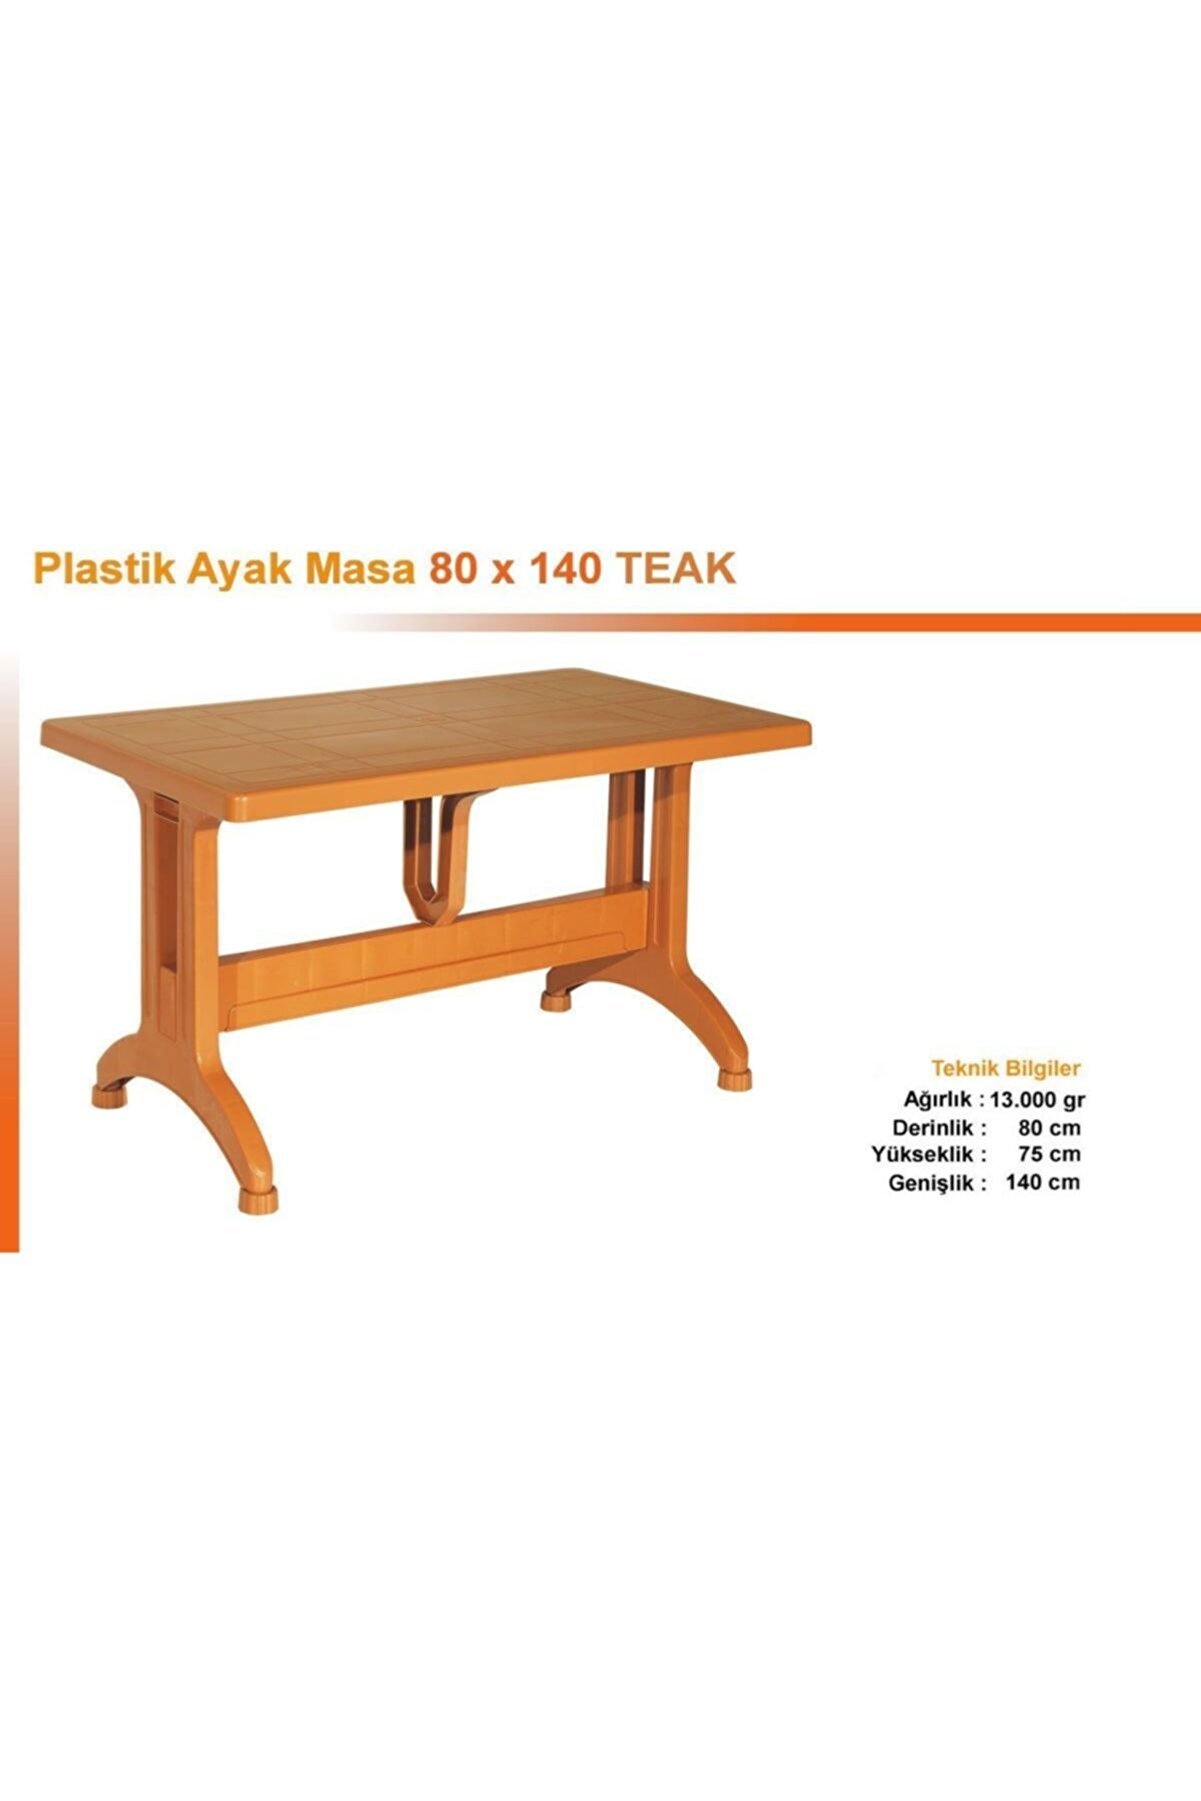 Özel Yapım Tam Plastik Masa 80x140 Ebatlı - Kaliteli Ürün - 2 Farklı Renk Seçeneği